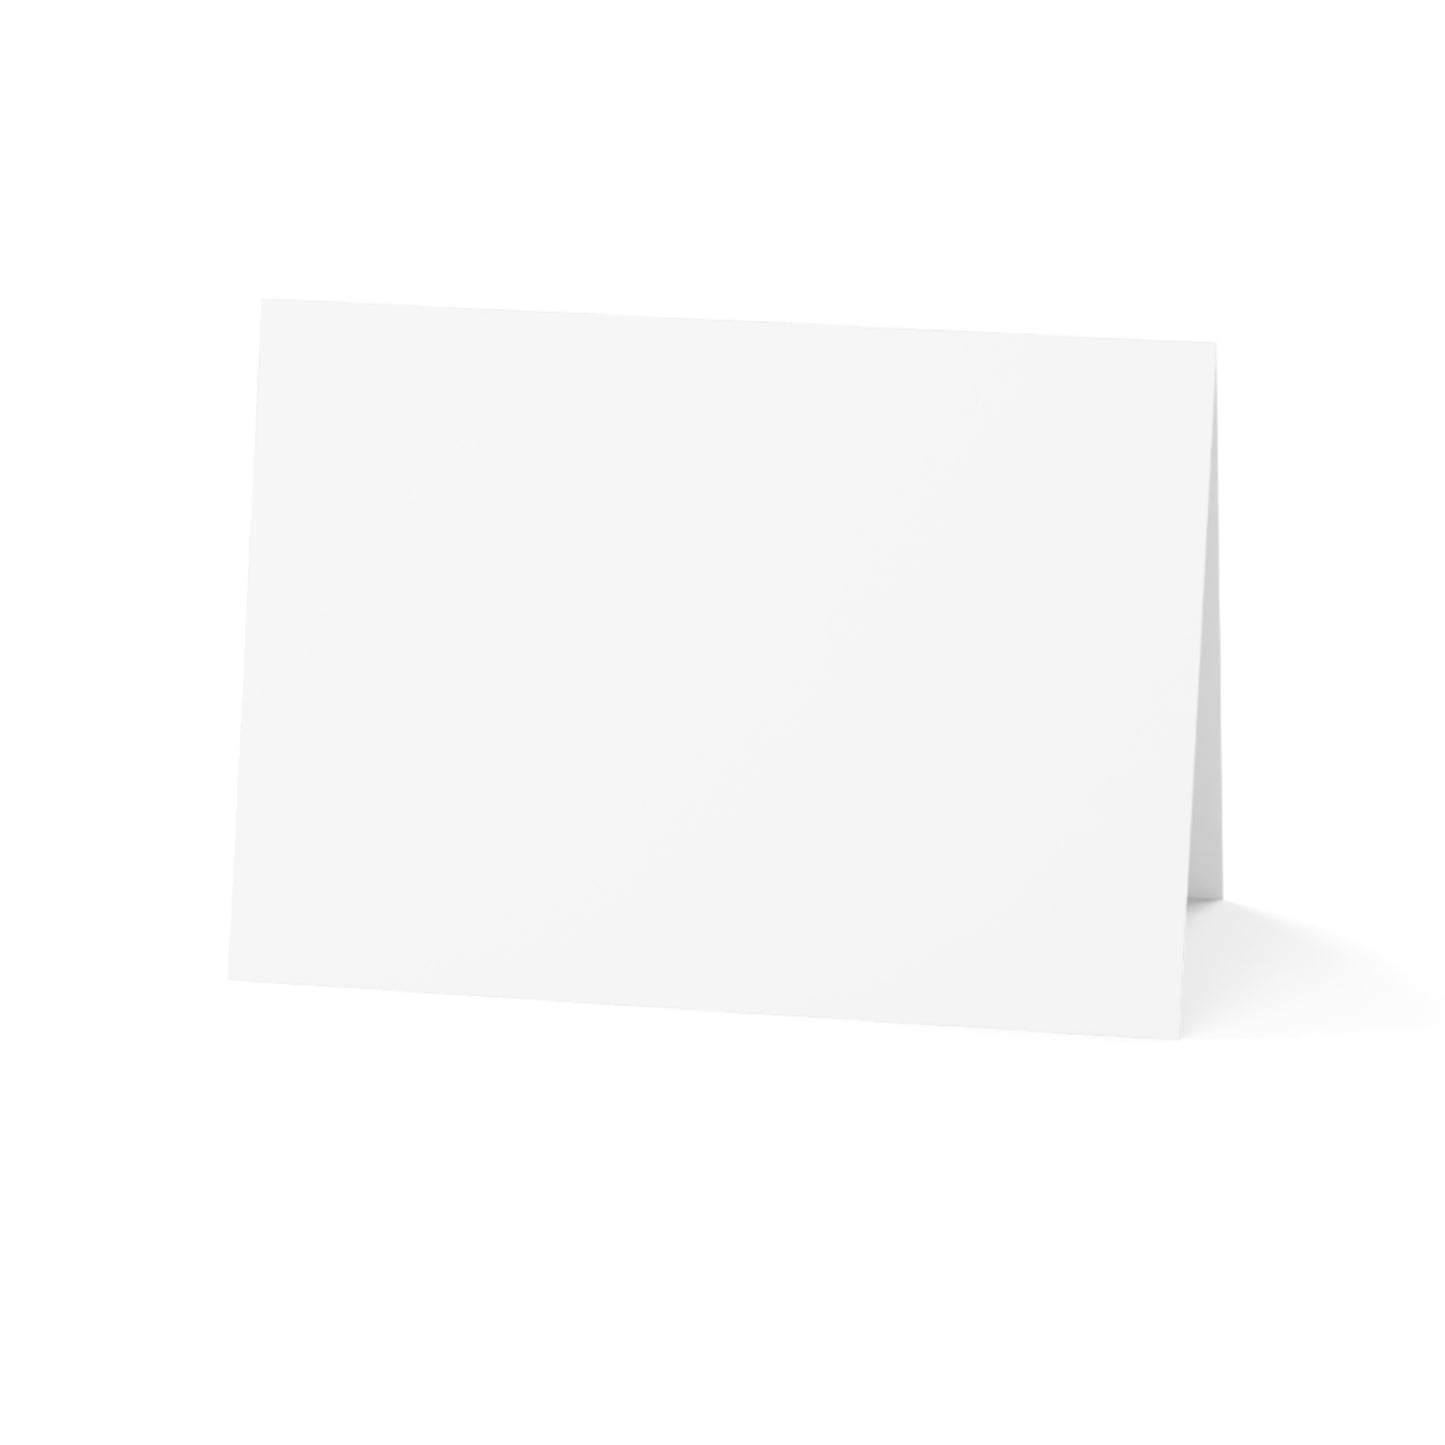 Anpassbare Grußkarten – gefaltete Grußkarten (1, 10, 30 und 50 Stück)